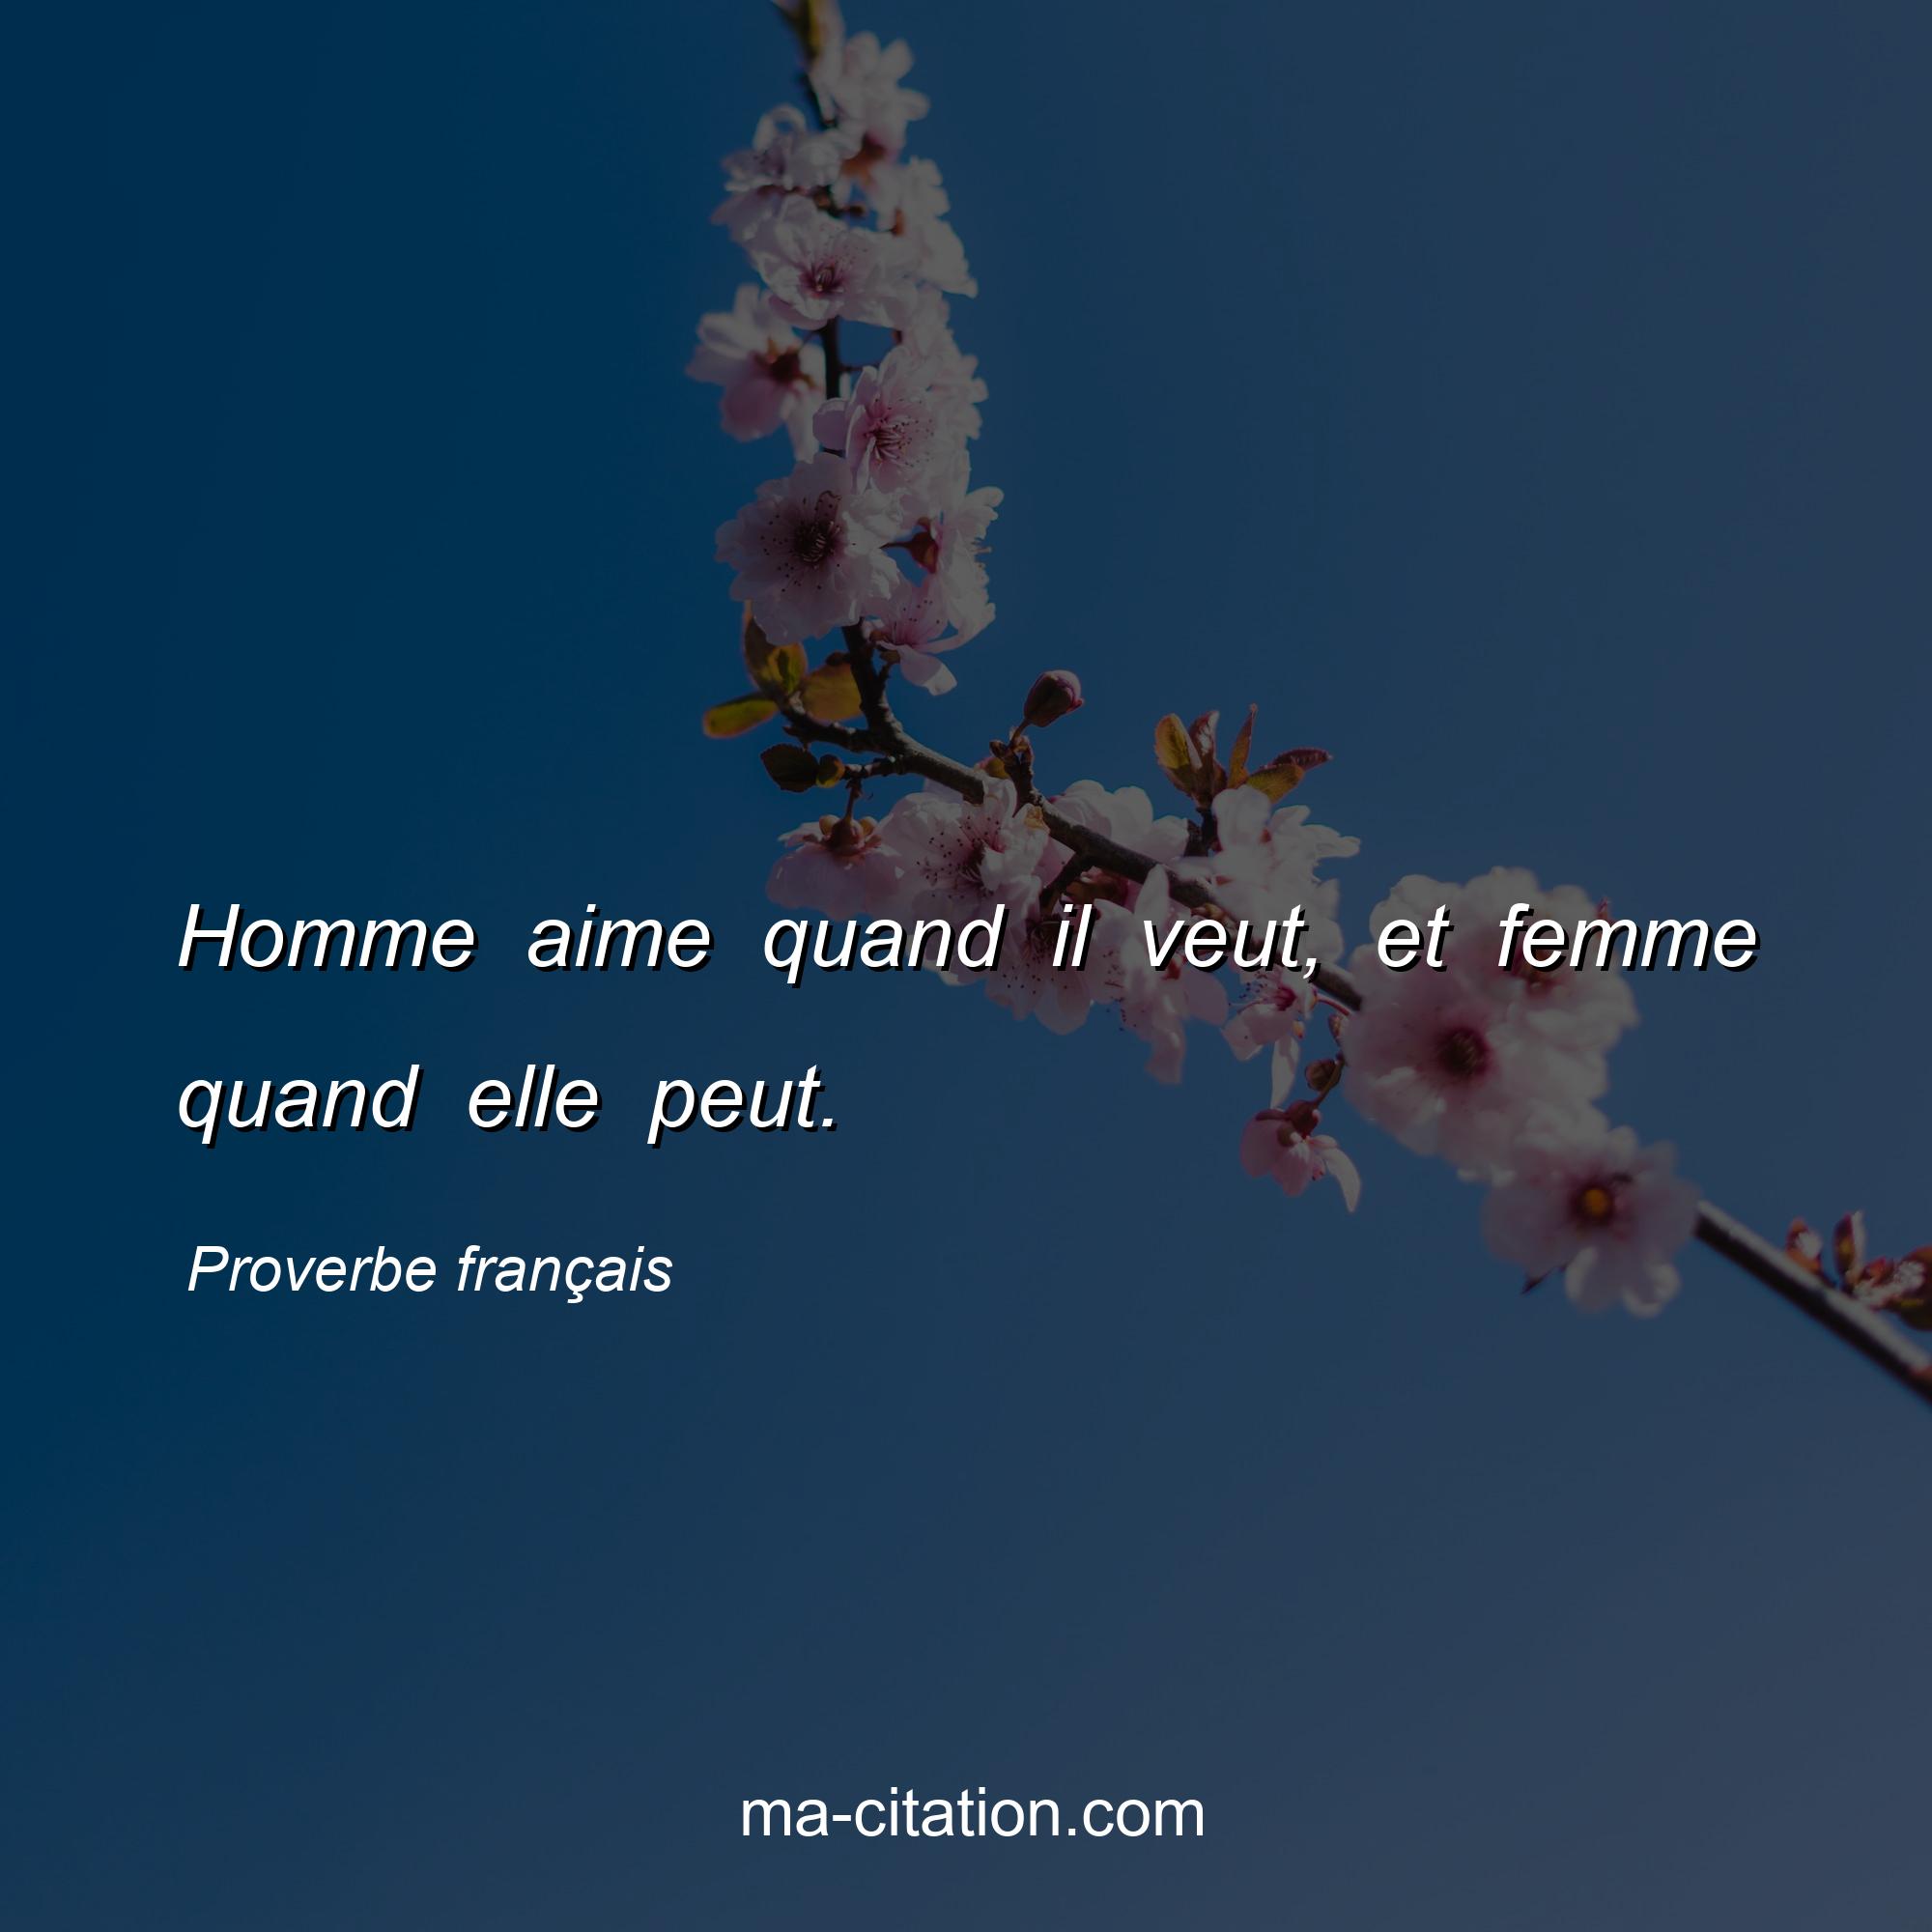 Proverbe français : Homme aime quand il veut, et femme quand elle peut.